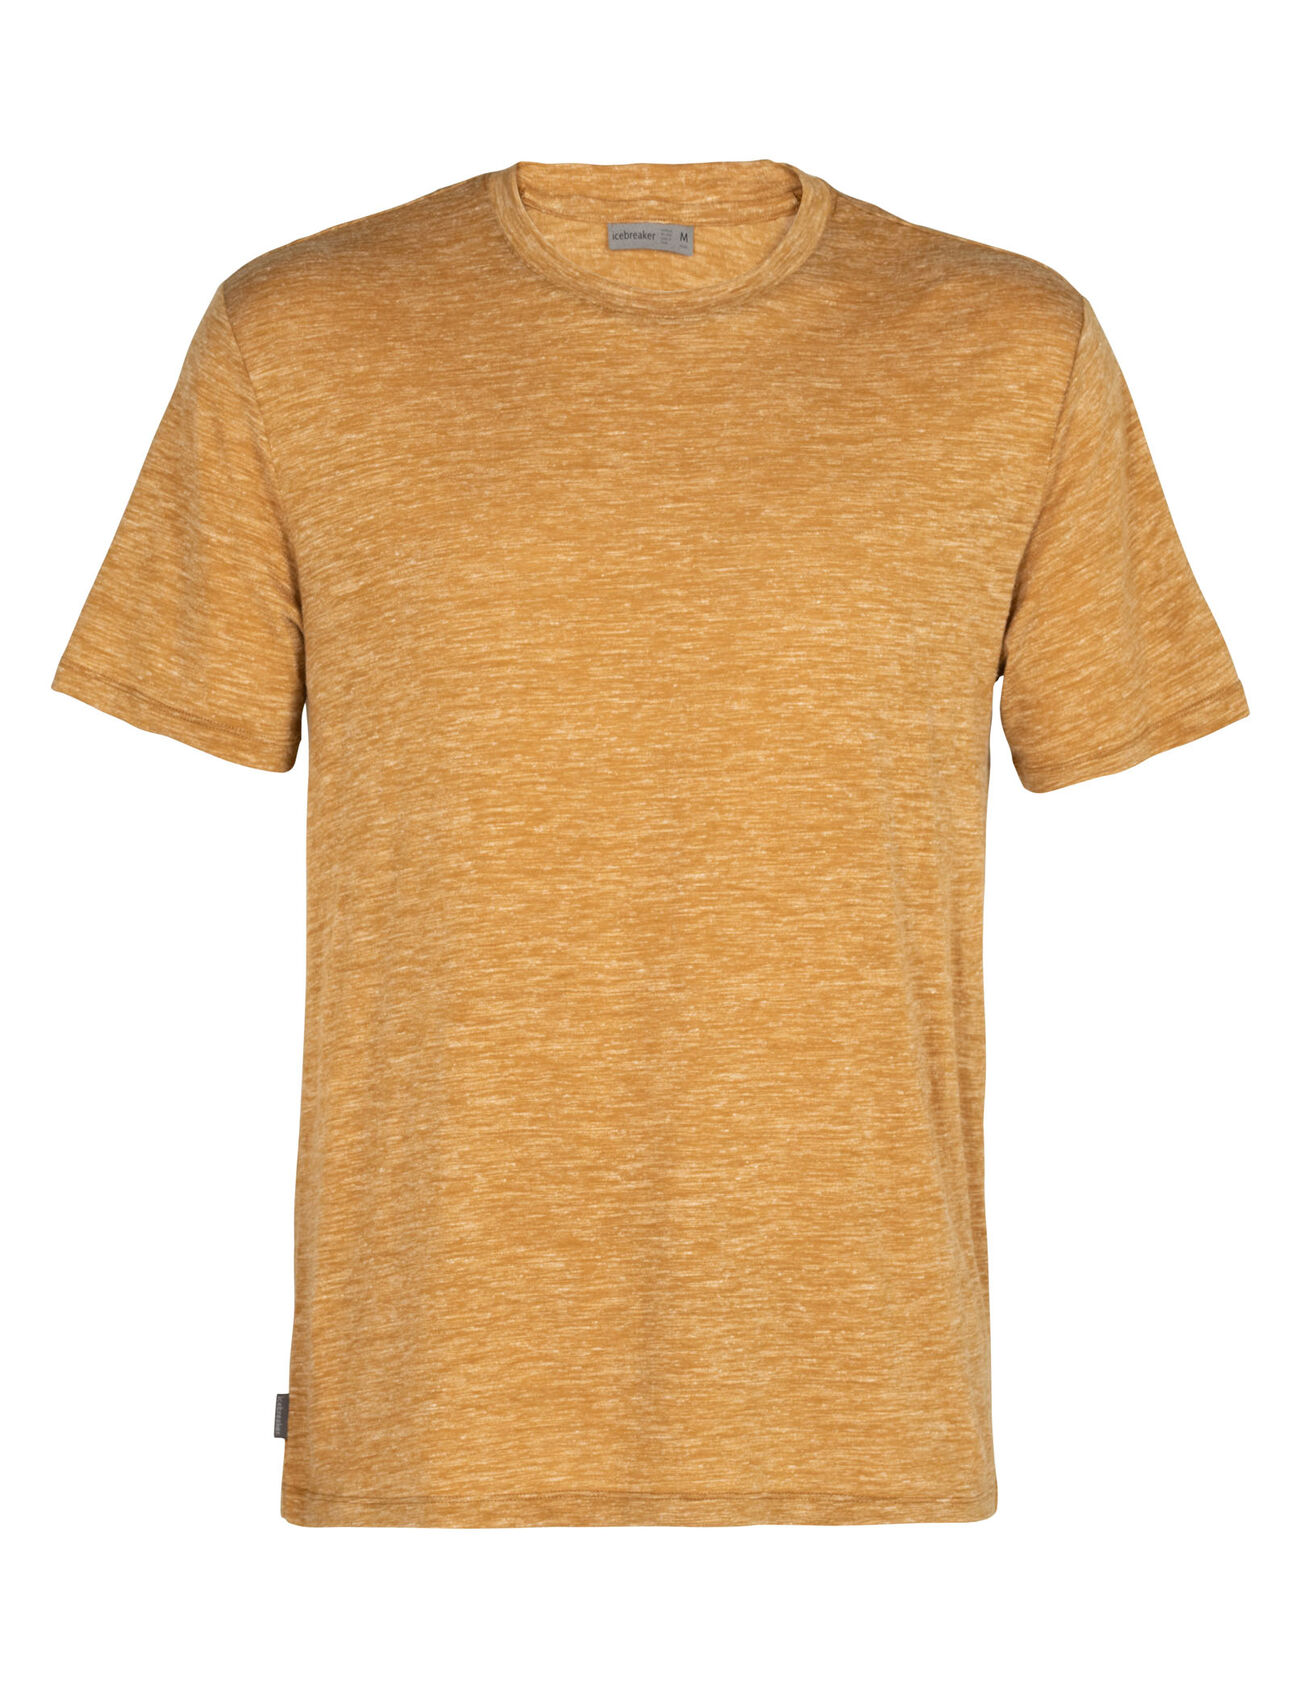 Merino Dowlas Short Sleeve Crewe T-Shirt